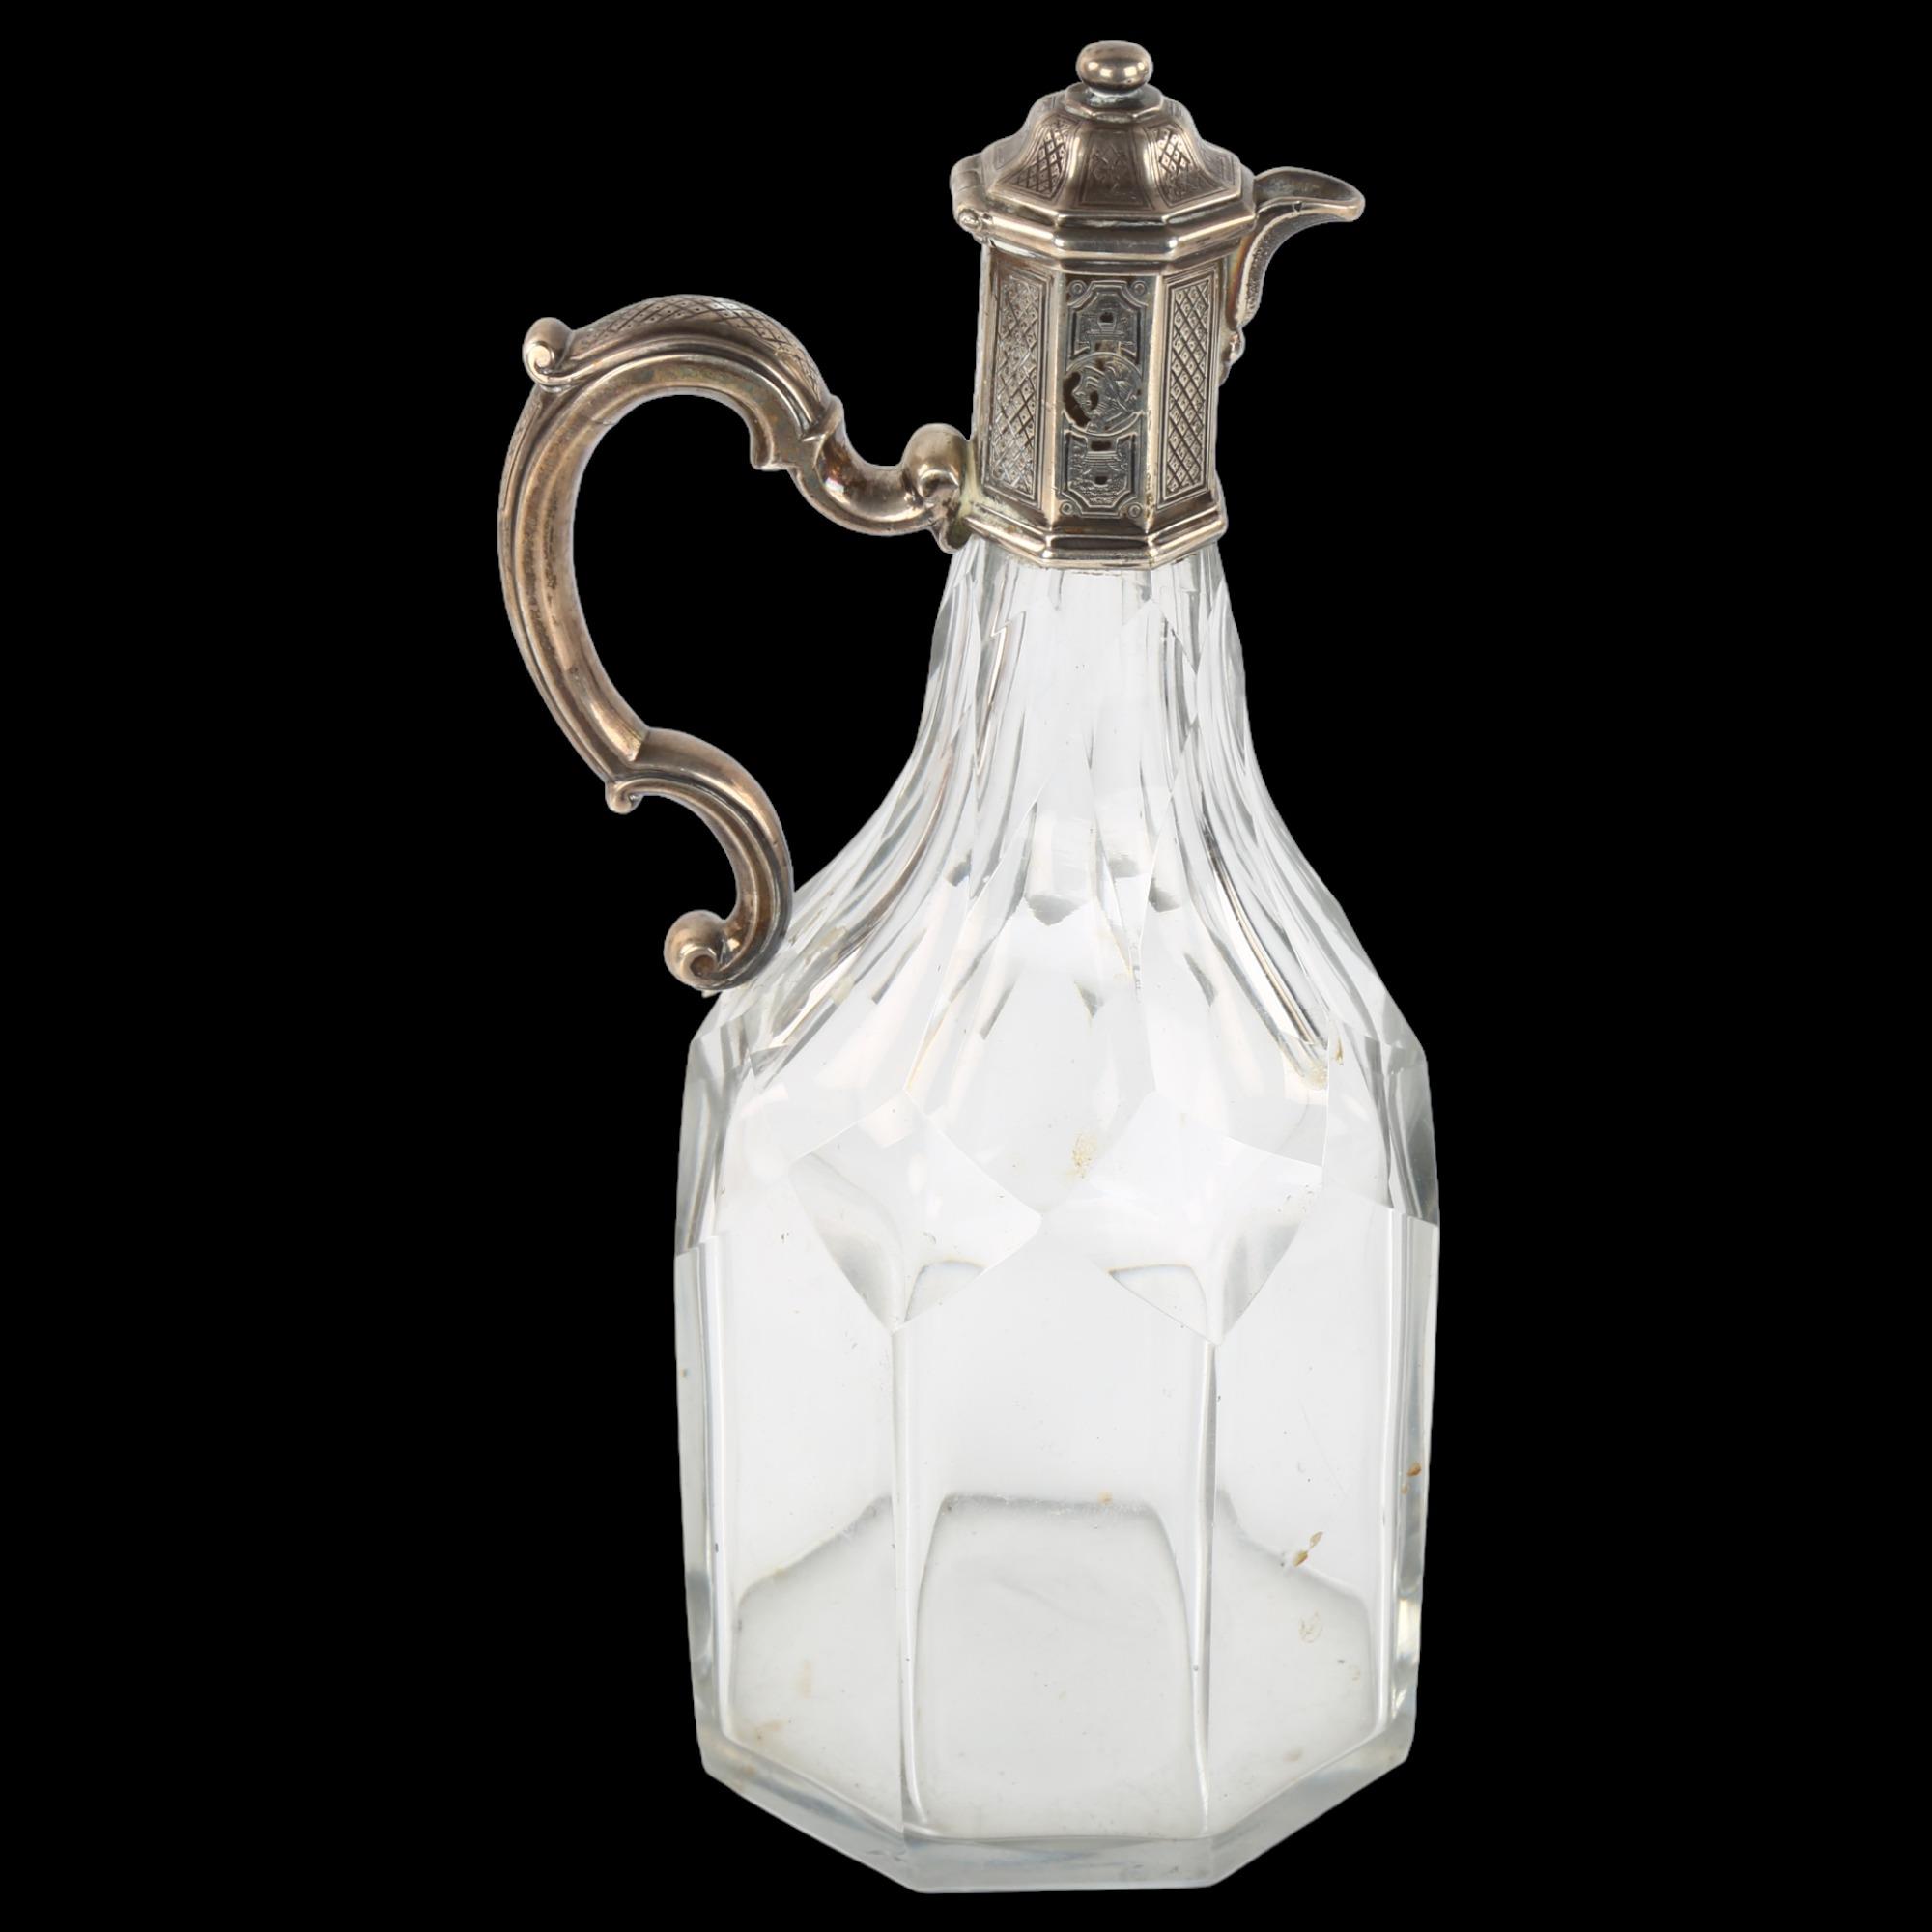 A George I/II silver-mounted cut-glass cruet bottle, in Regency style, possibly by Paul De